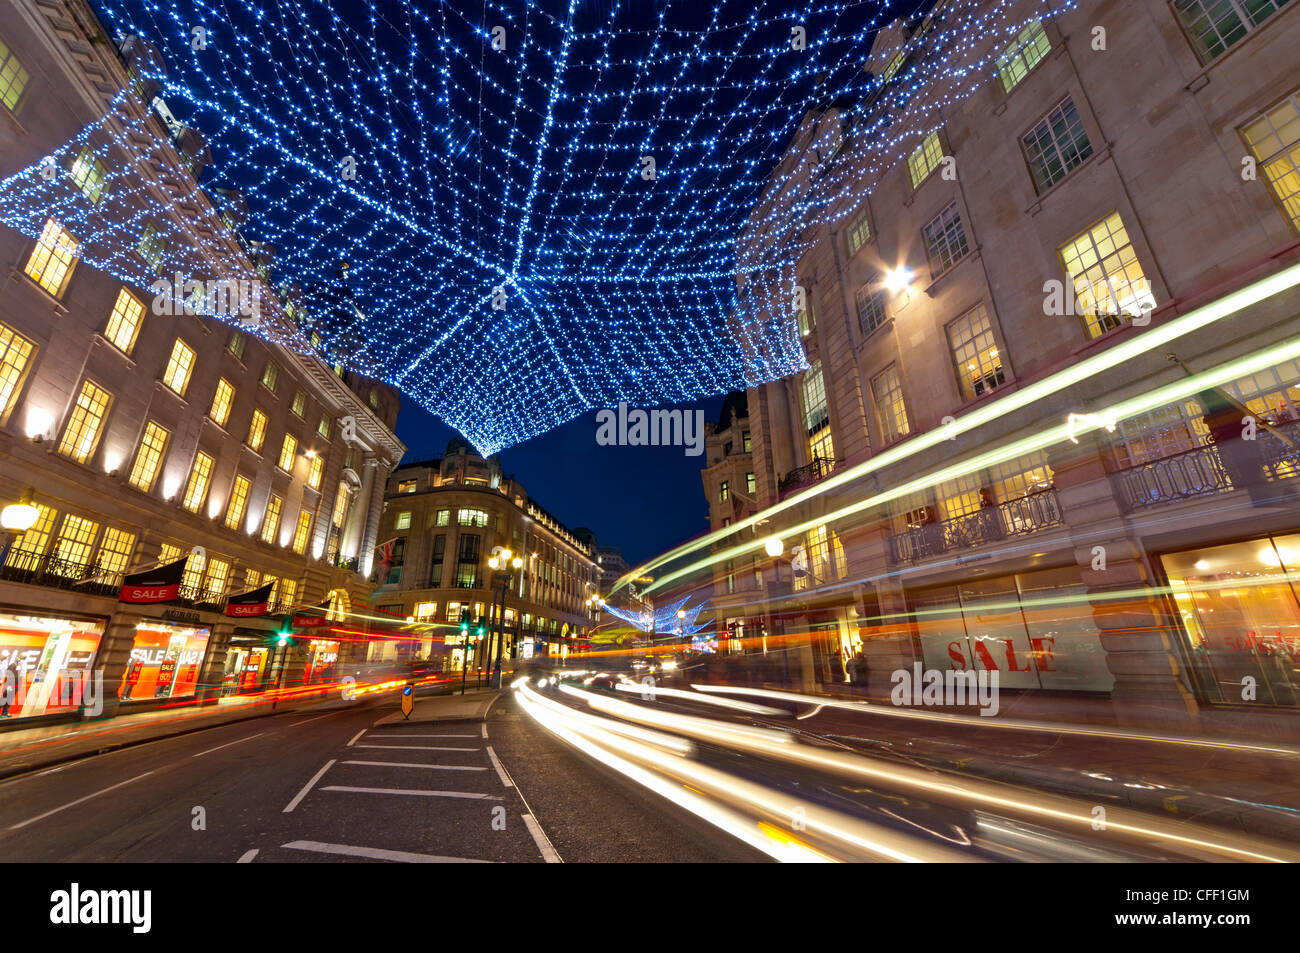 Le luci di Natale, Regents Street, London, England, Regno Unito, Europa Foto Stock